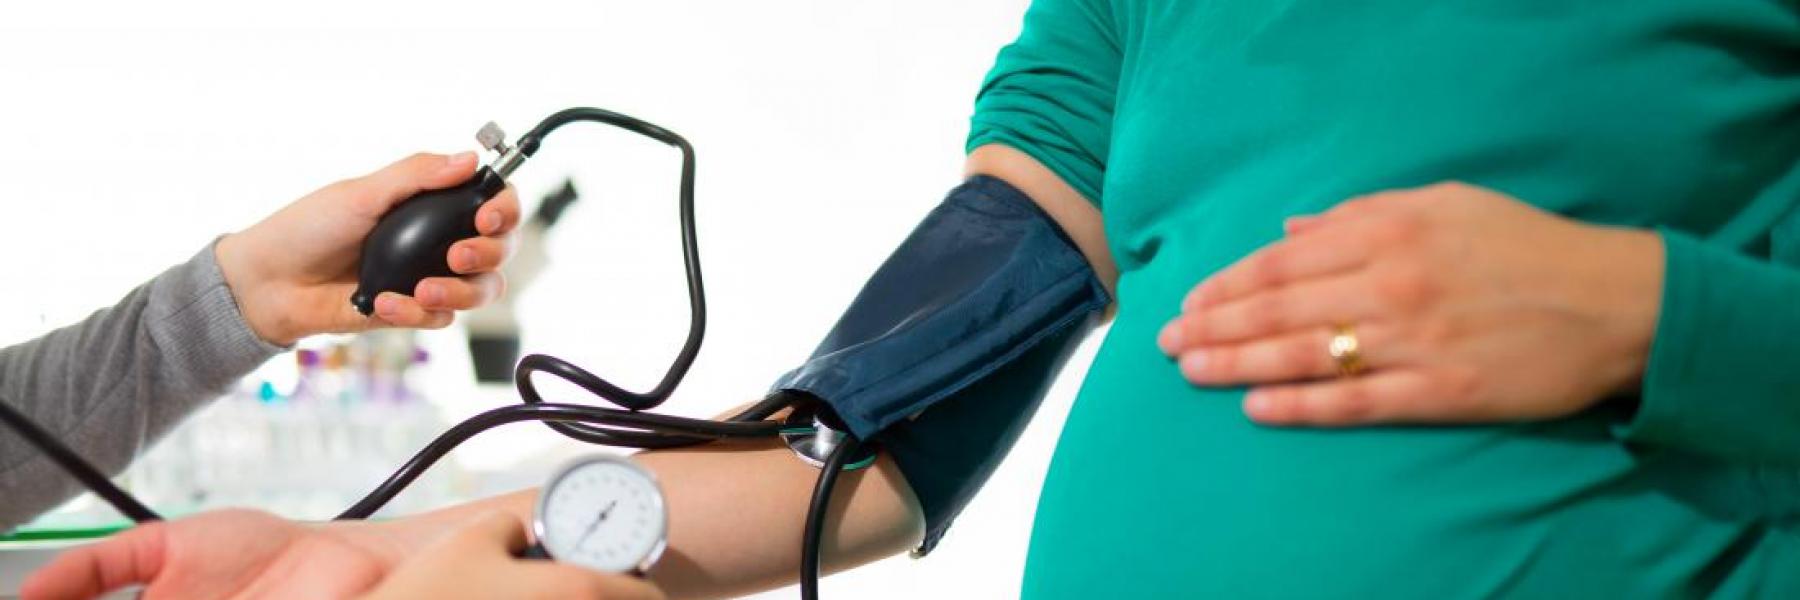 النساء المصابات بارتفاع ضغط الدم أثناء الحمل أكثر عرضة للاصابة بالخرف